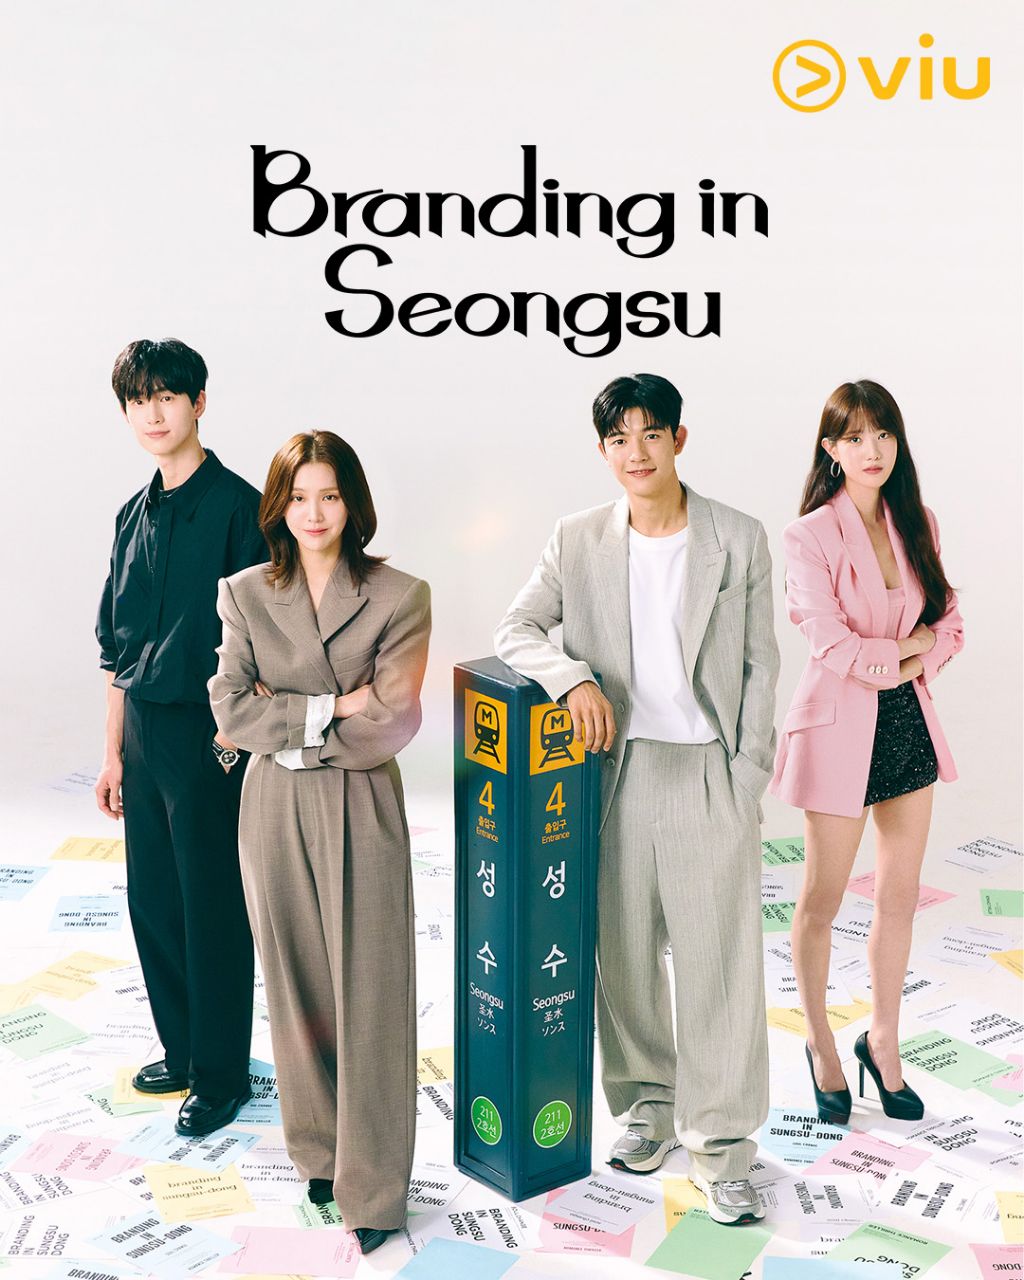 مسلسل العلامة التجارية في سيونغسو Branding in Seongsu الحلقة 10